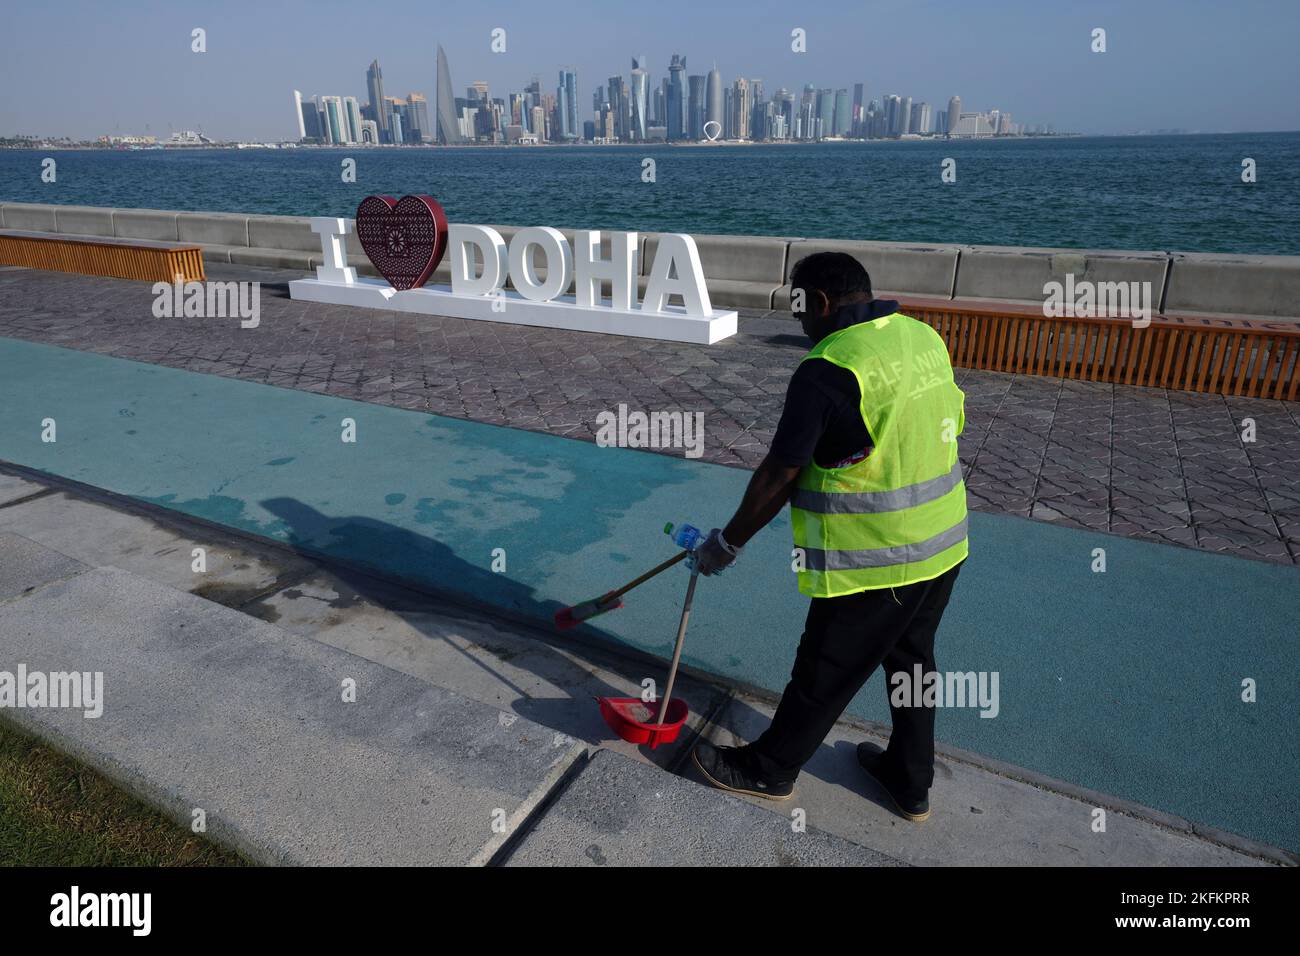 Un lavoratore si avvicina a un cartello i Love Doha a Doha, in vista della Coppa del mondo FIFA 2022 in Qatar. Data immagine: Sabato 19 novembre 2022. Foto Stock